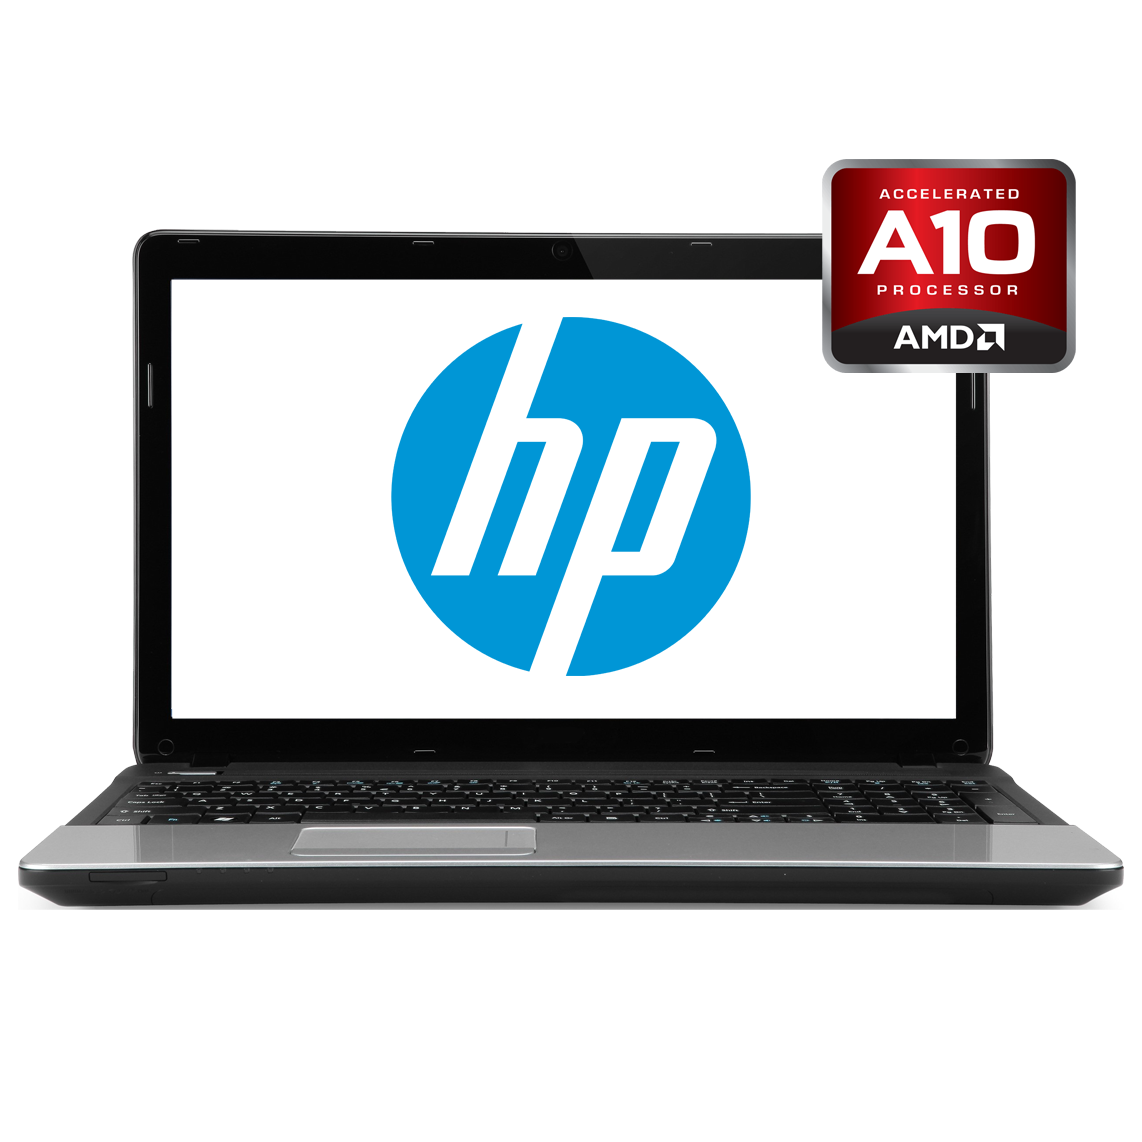 HP - 16 inch AMD A10